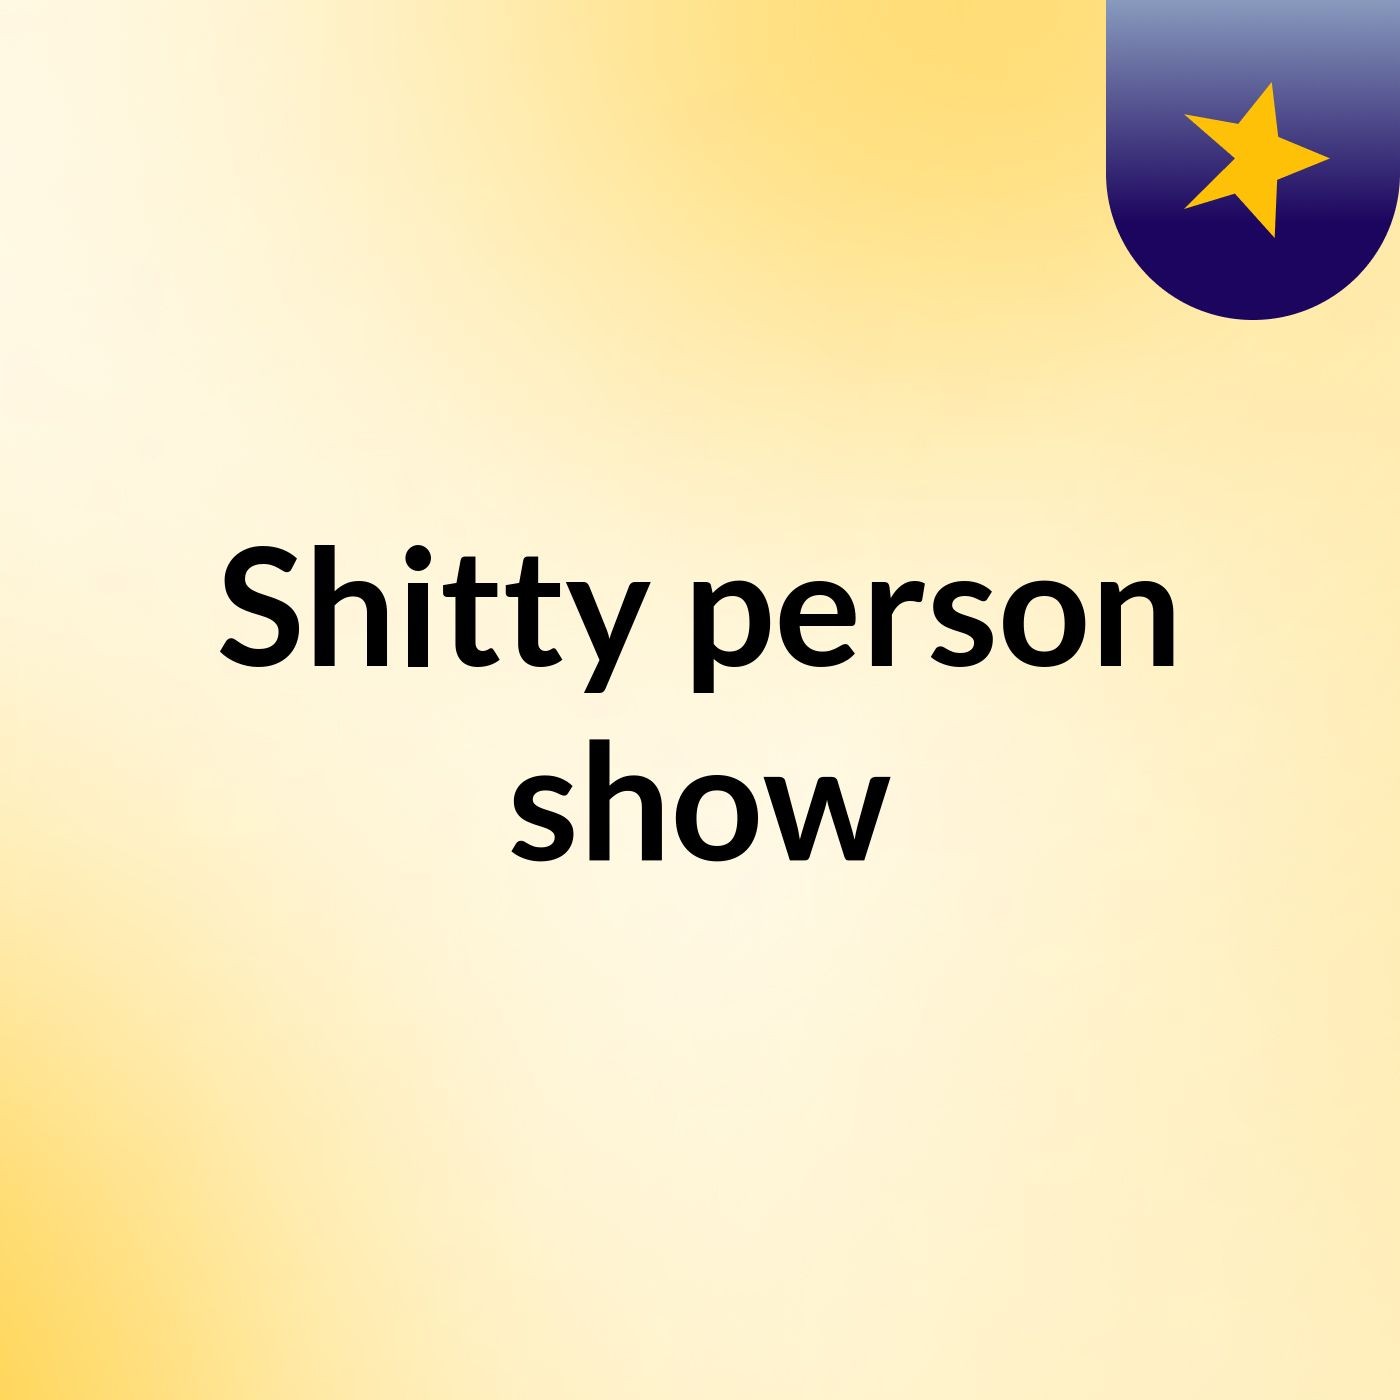 Shitty person show